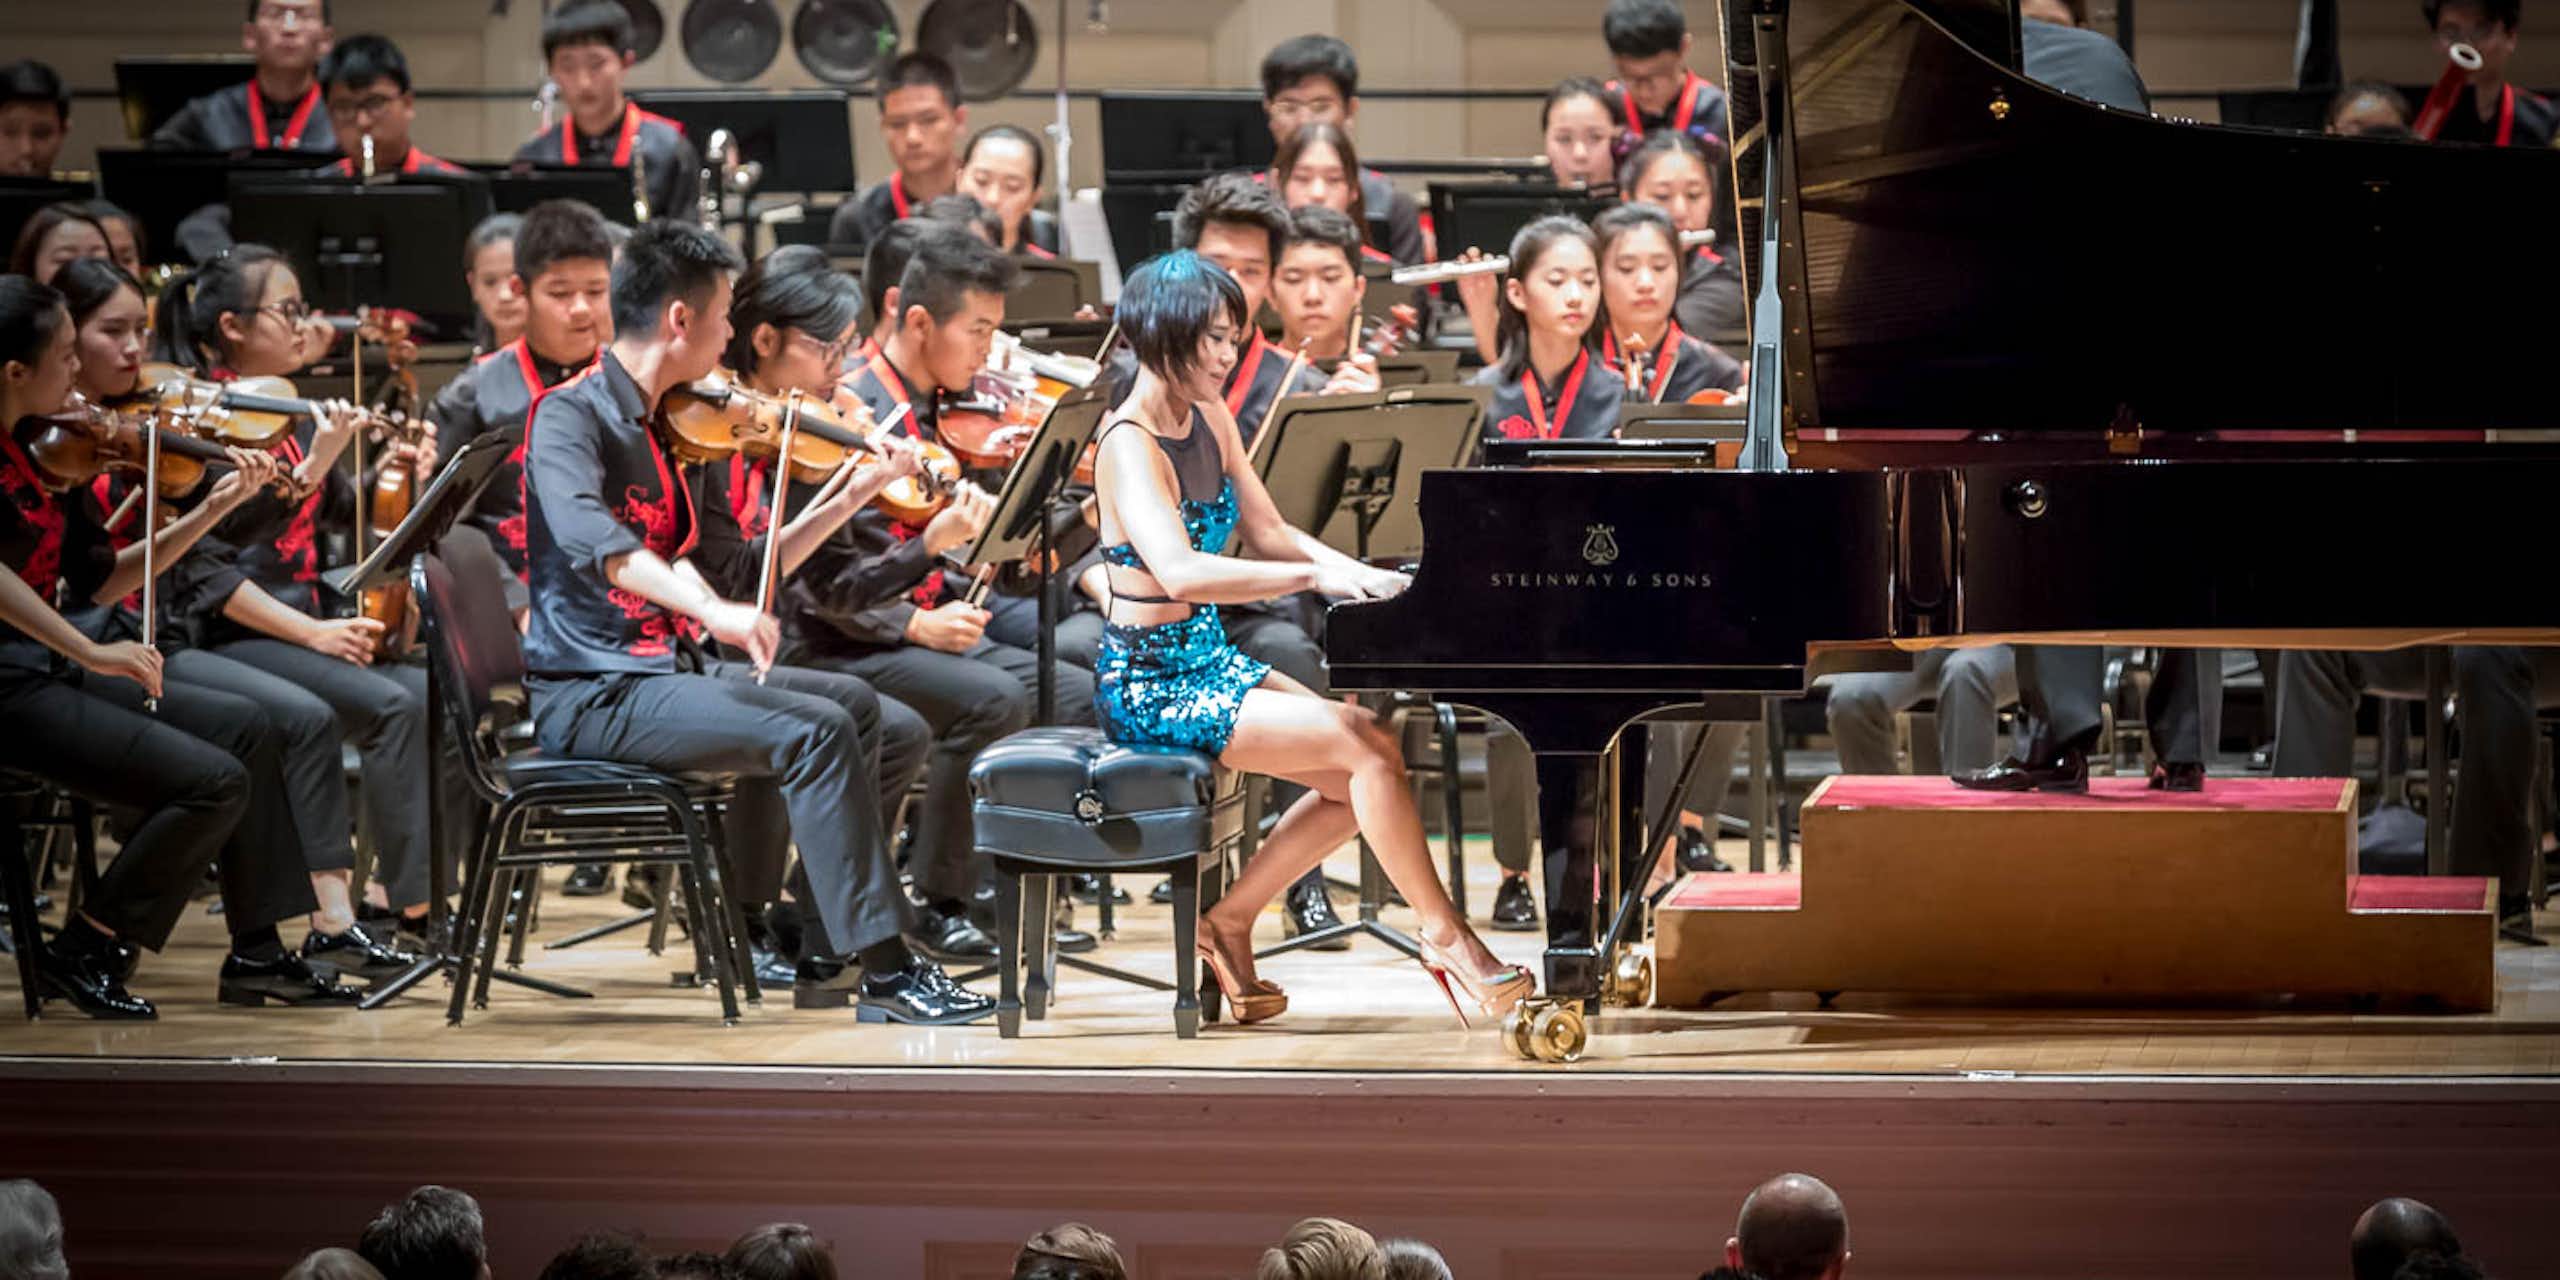 Una mujer joven toca el piano delante de una orquesta compuesta por chicos y chicas de unos veinte años.